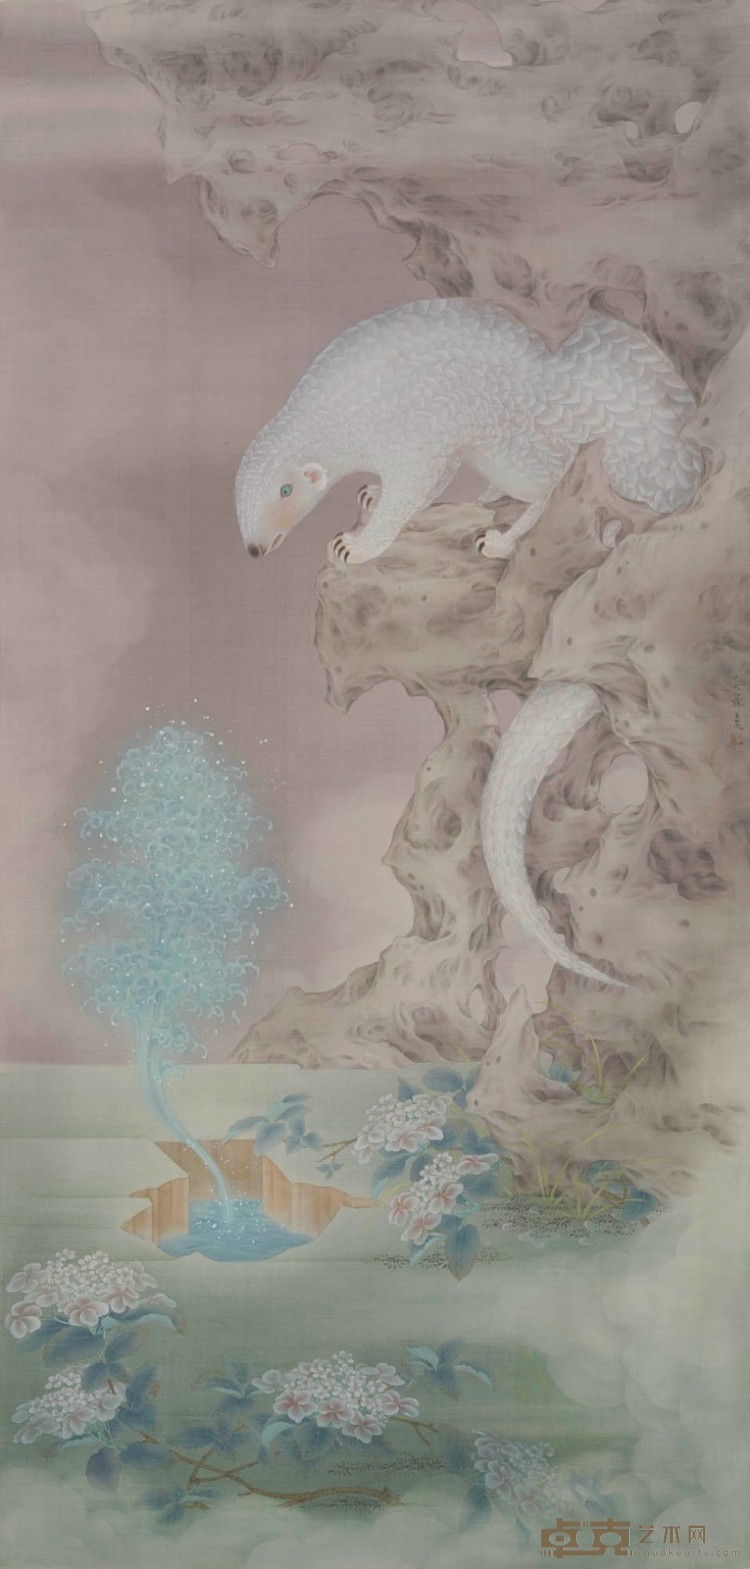 王昊石鲮浮泉 130X62cm 绢本 2020年作.jpg